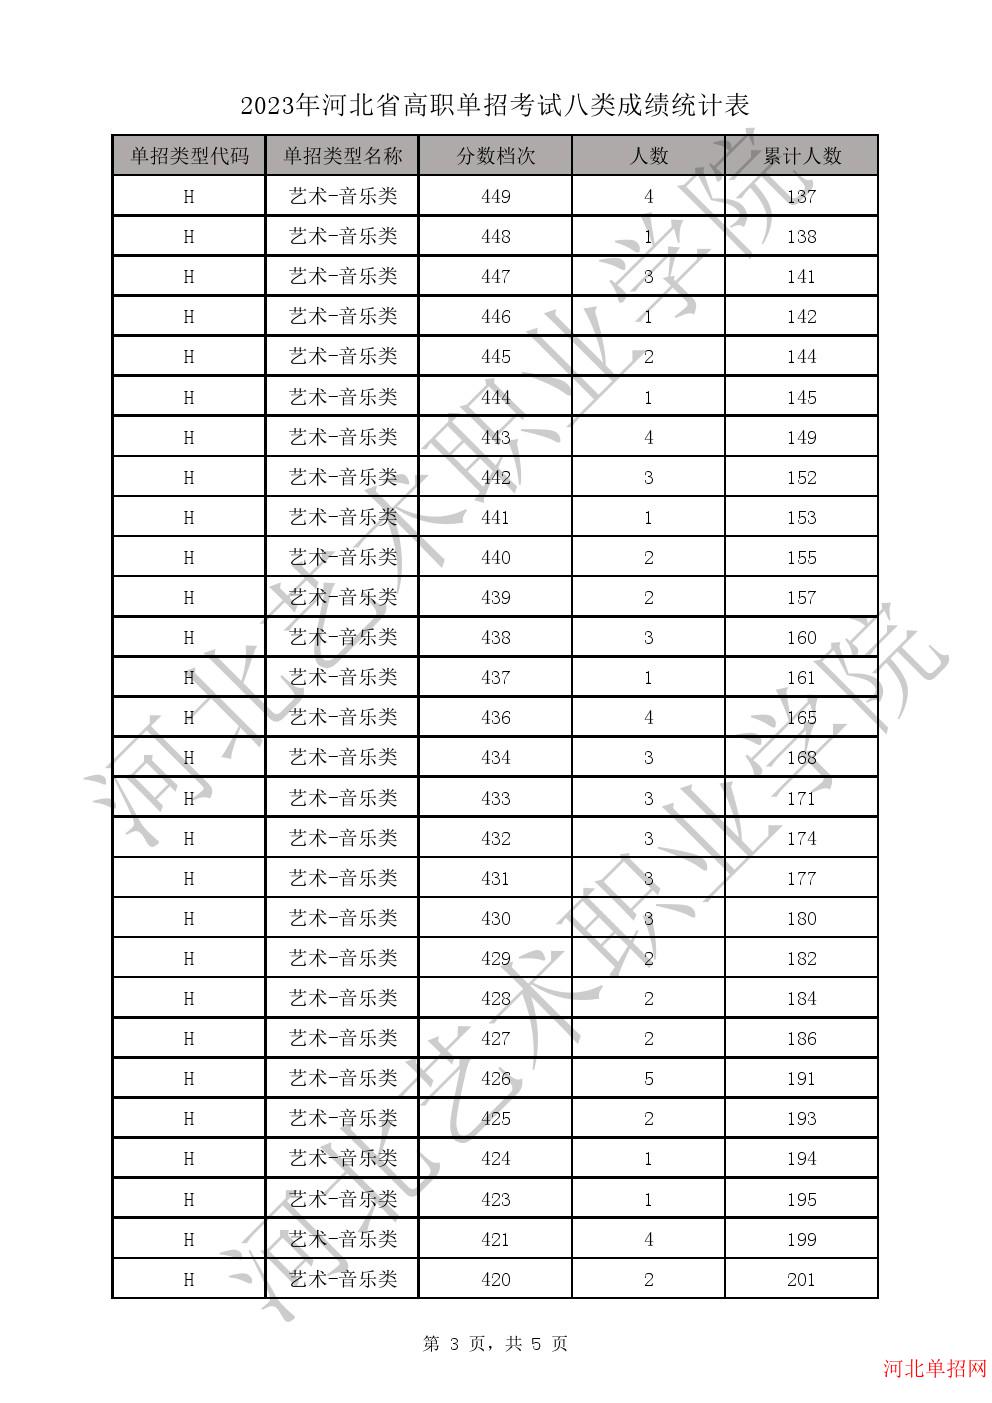 2023年河北省高职单招考试八类成绩统计表-H艺术-音乐类一分一档表 图3